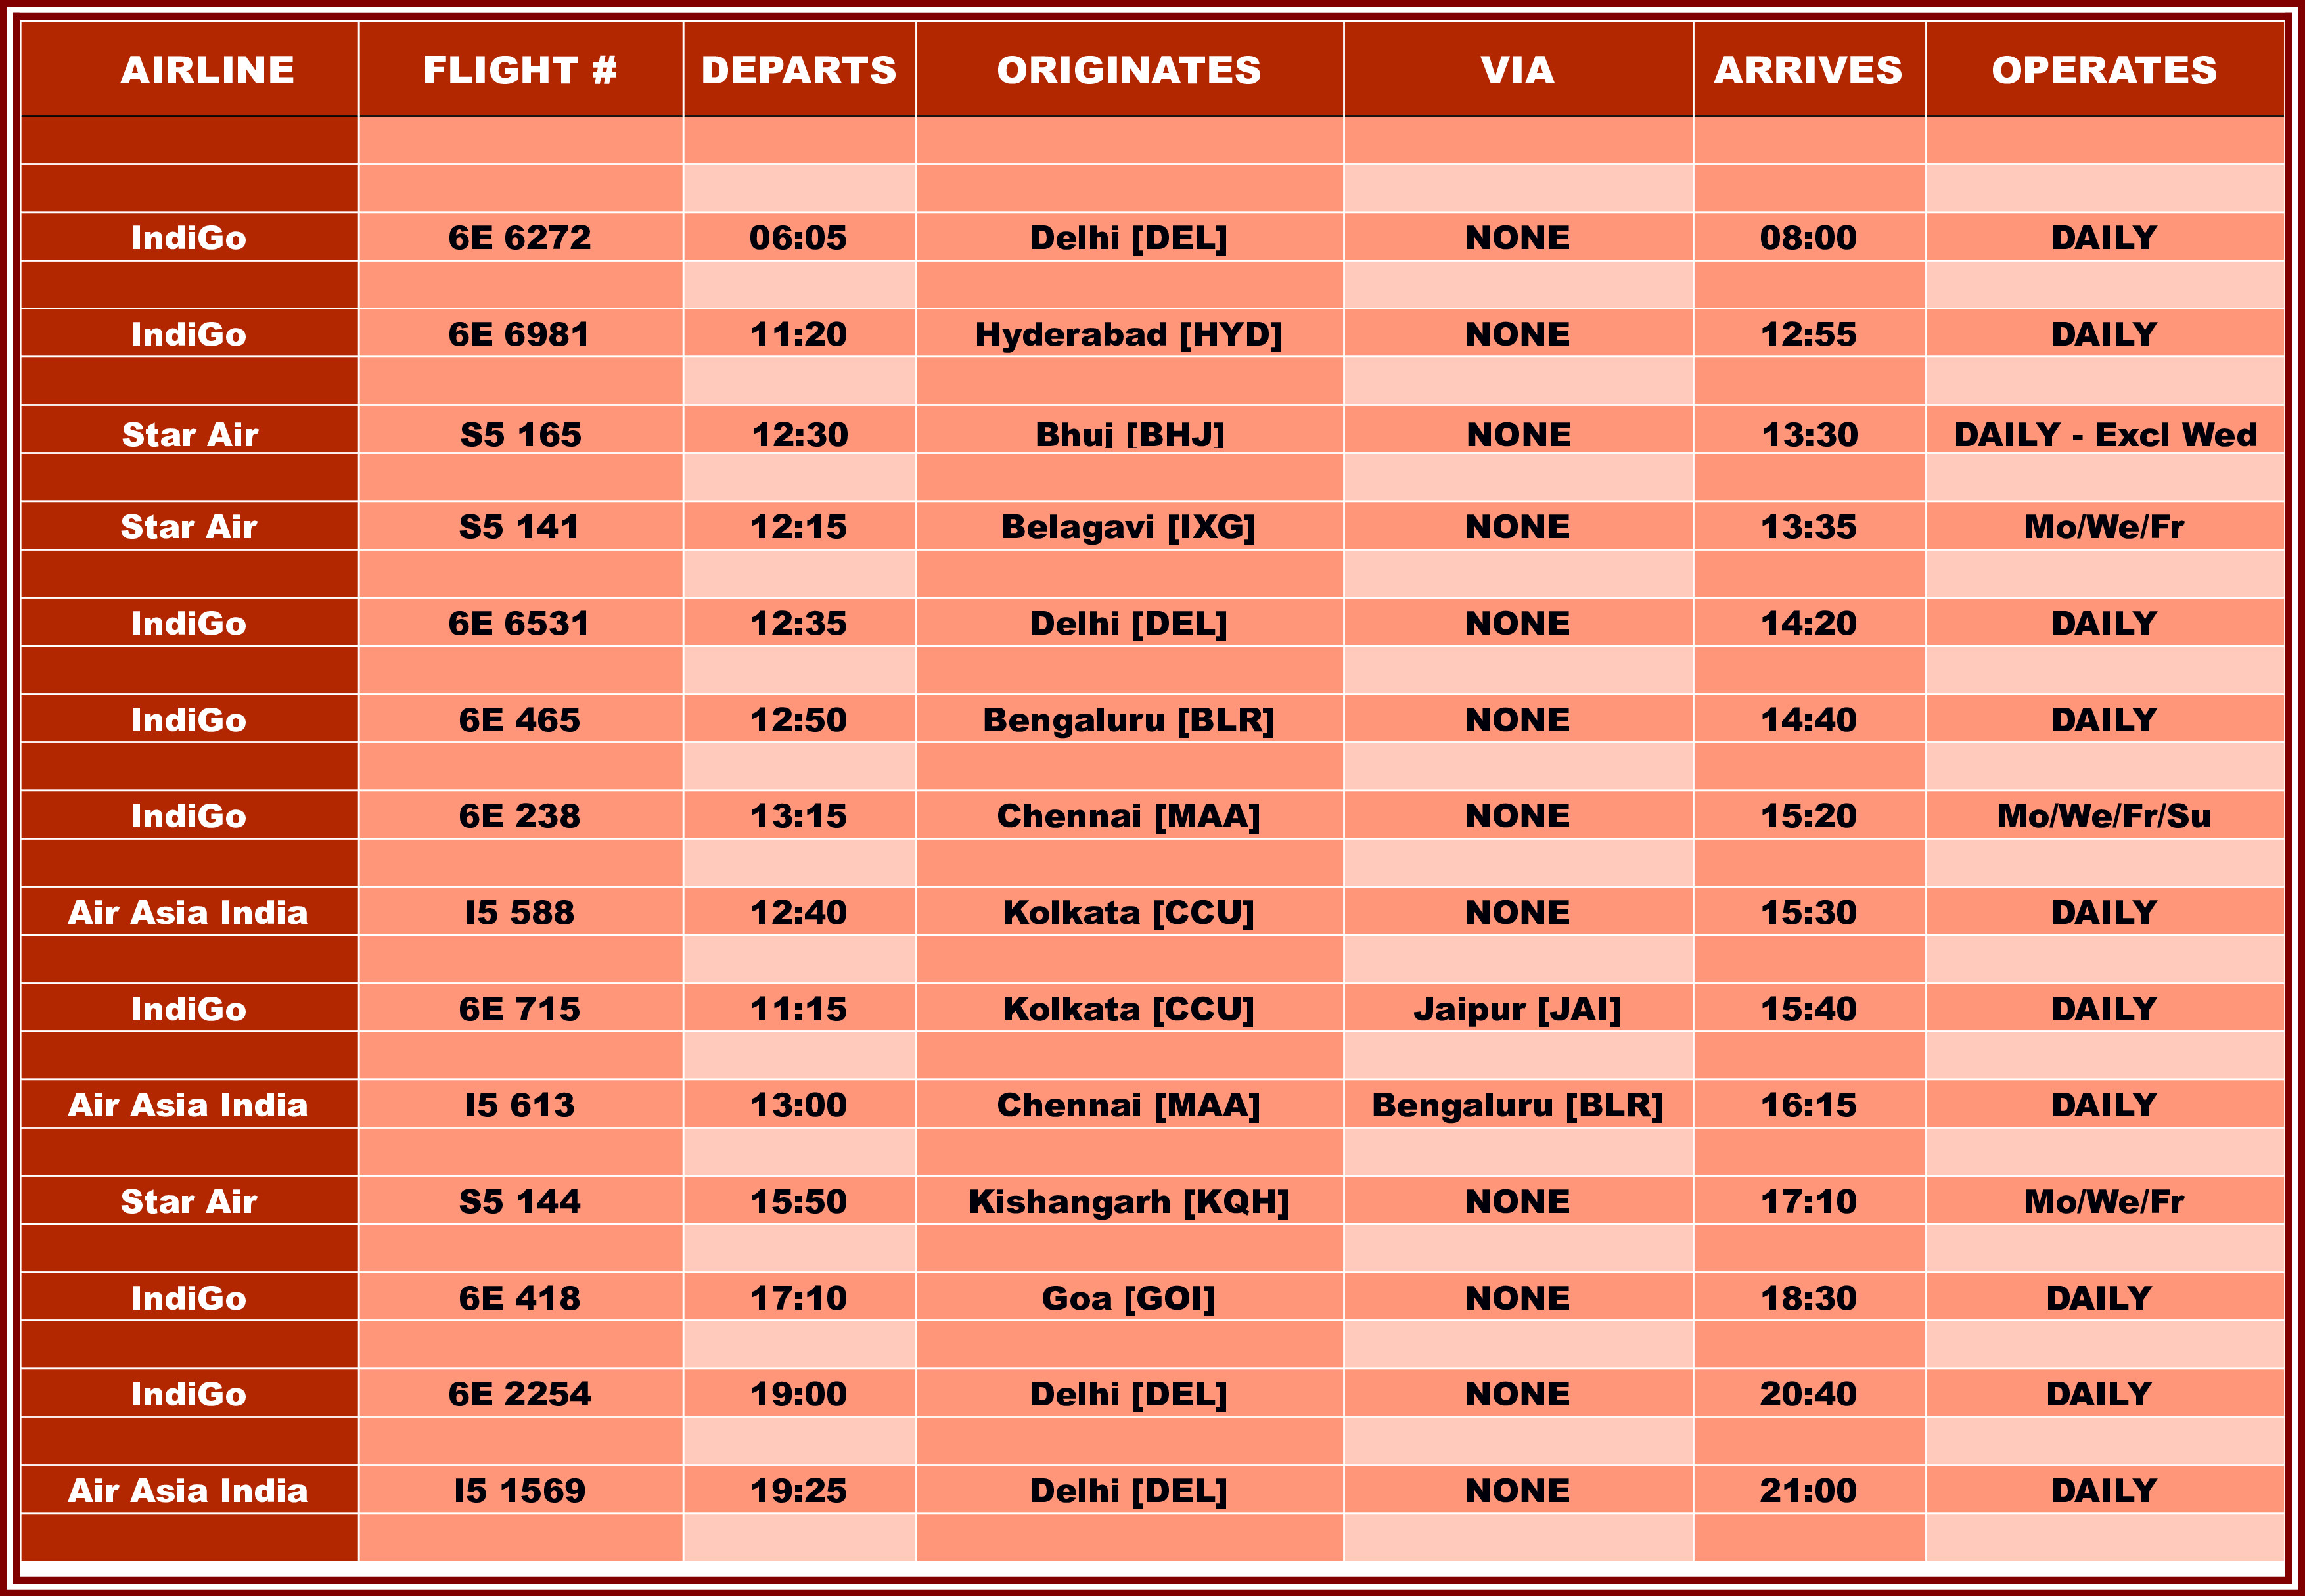 Surat Airport - Flight Schedule